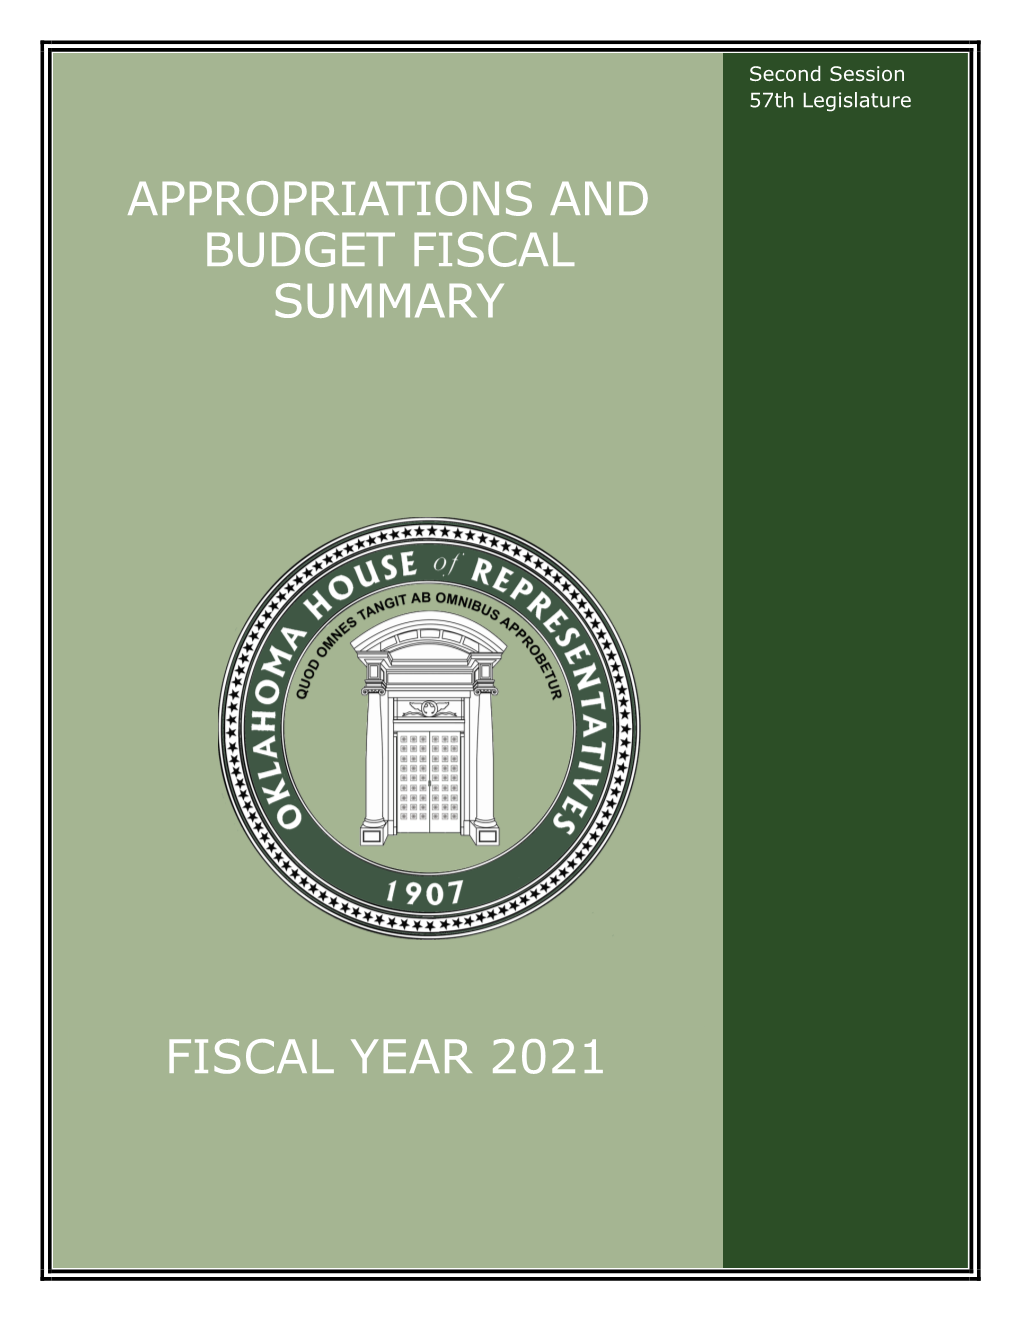 FY21 Fiscal Year Summary